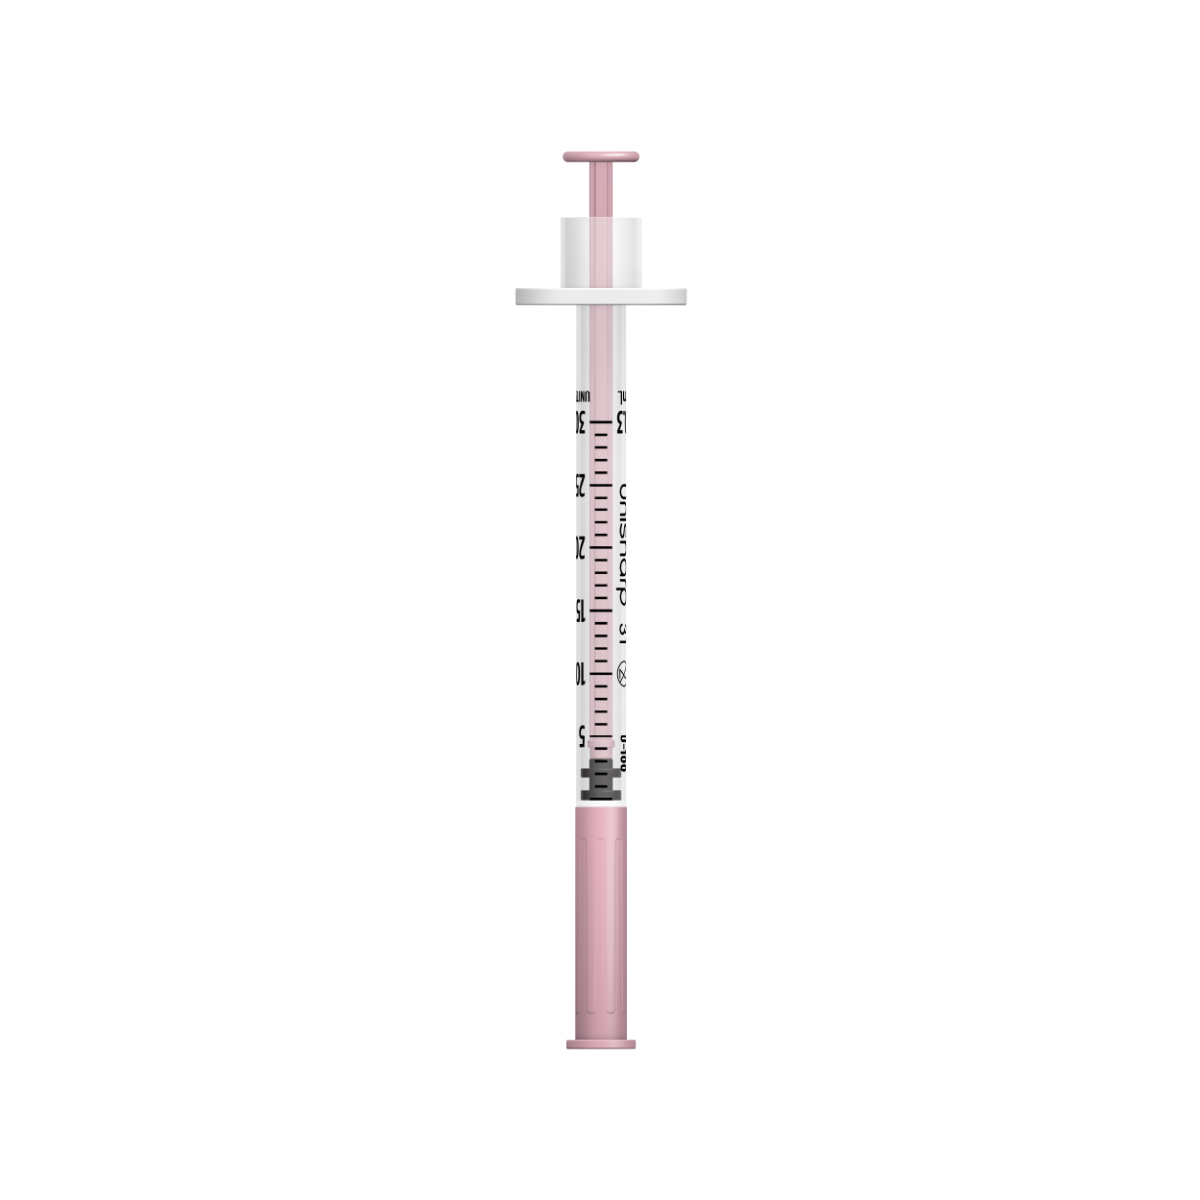 Unisharp 31G 0.3mL Fixed Needle Syringe: Pink